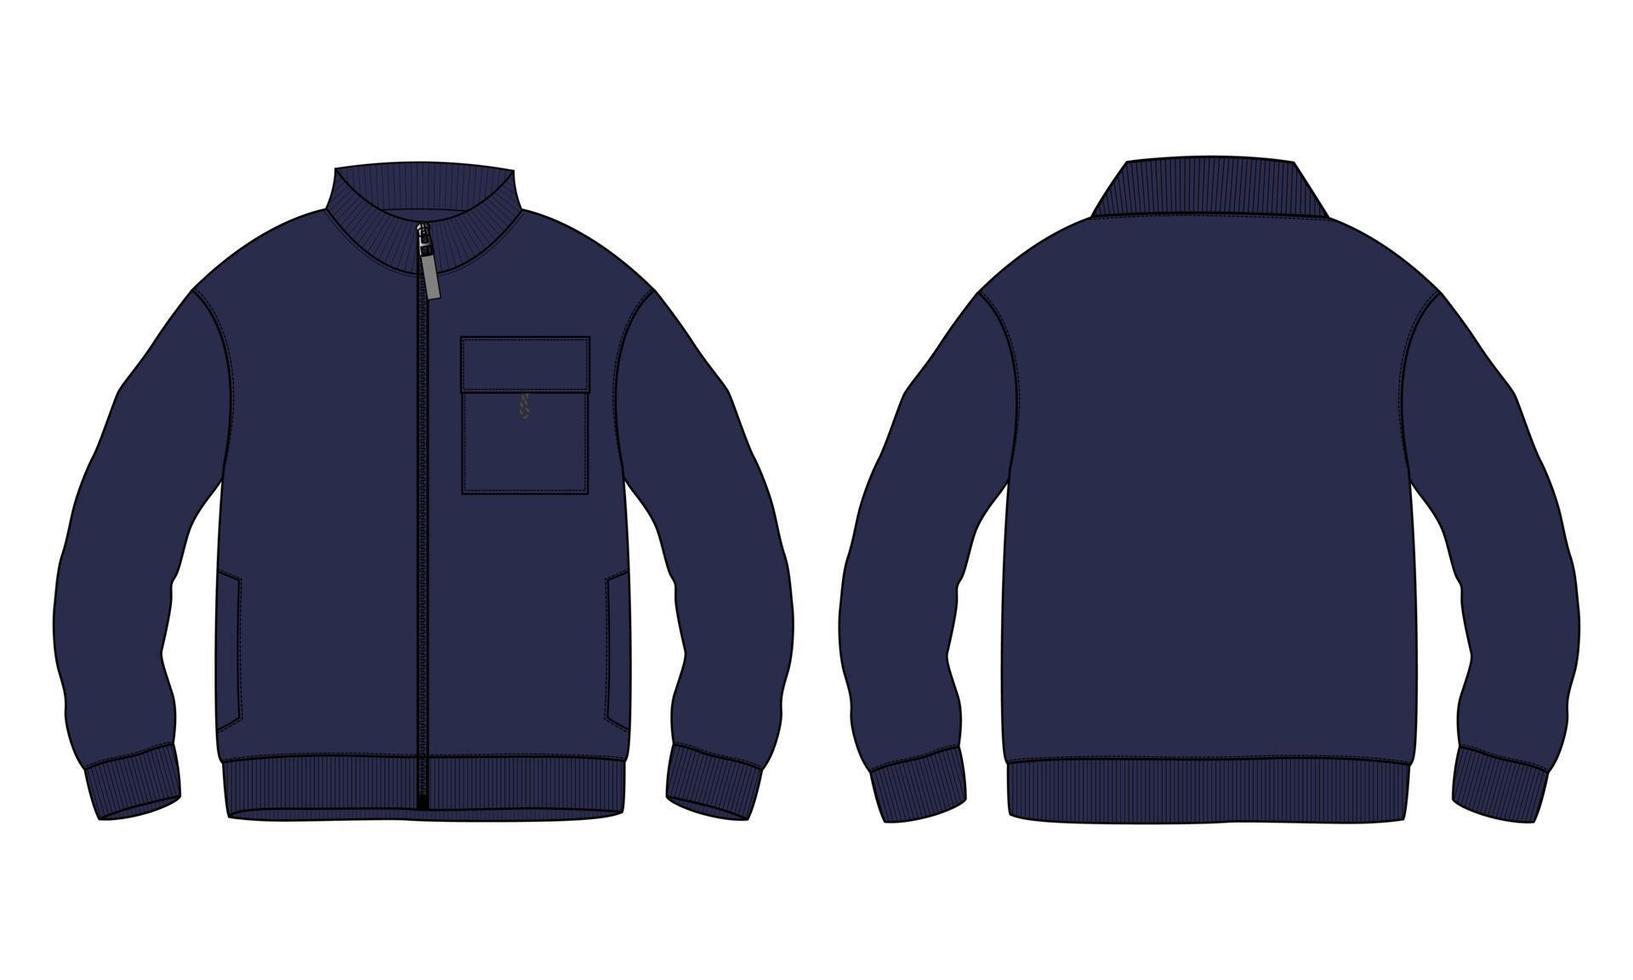 chaqueta de manga larga moda técnica boceto plano ilustración vectorial plantilla de color azul marino vistas frontal y posterior. vector